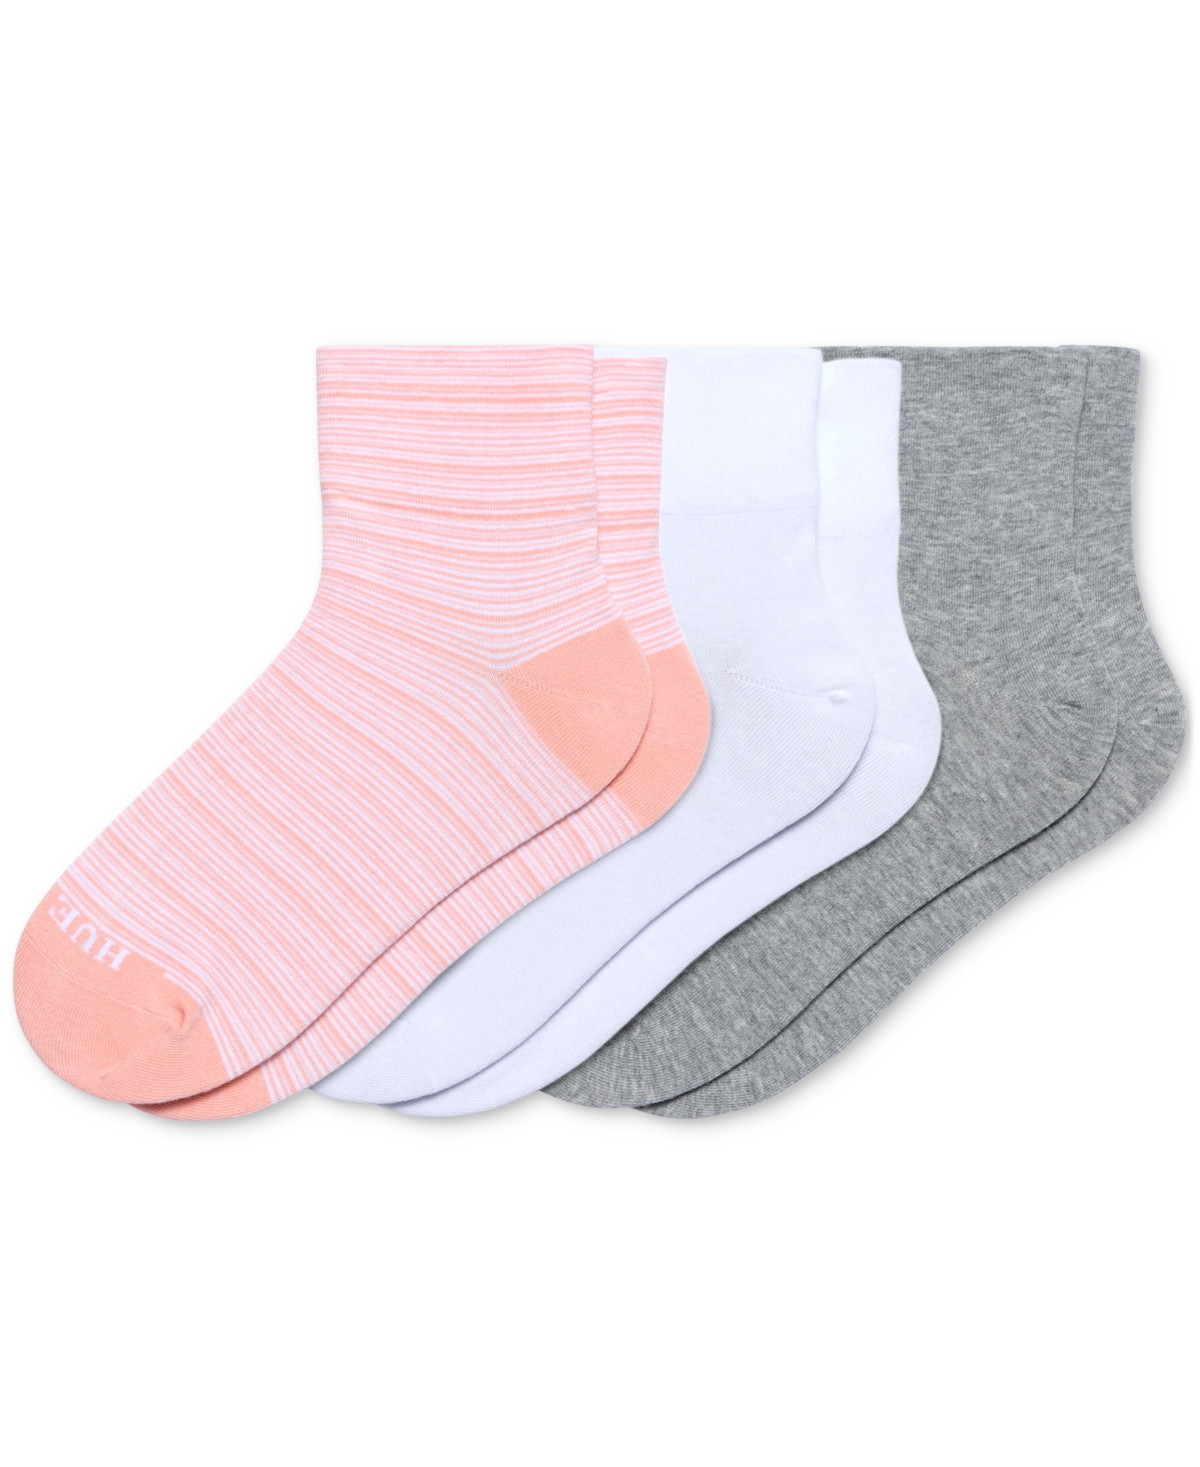 Women's 3-Pk. Seamed Knit Shorty Socks - Stripe